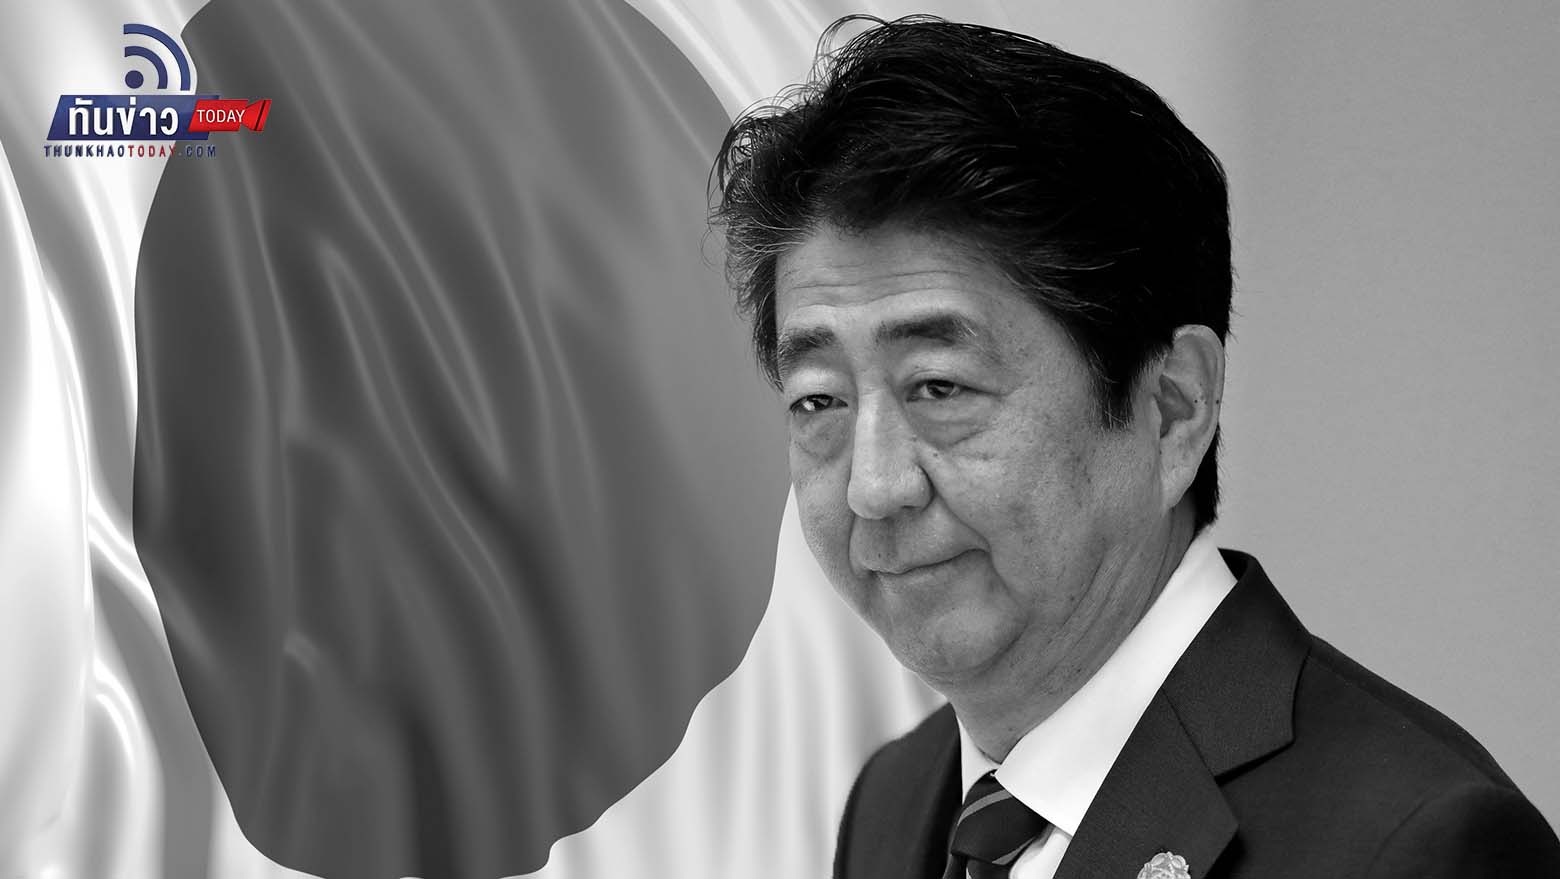 ช็อคโลก! “ชินโซ อาเบะ” อดีตนายกรัฐมนตรีญี่ปุ่นถูกลอบยิงเสียชีวิต